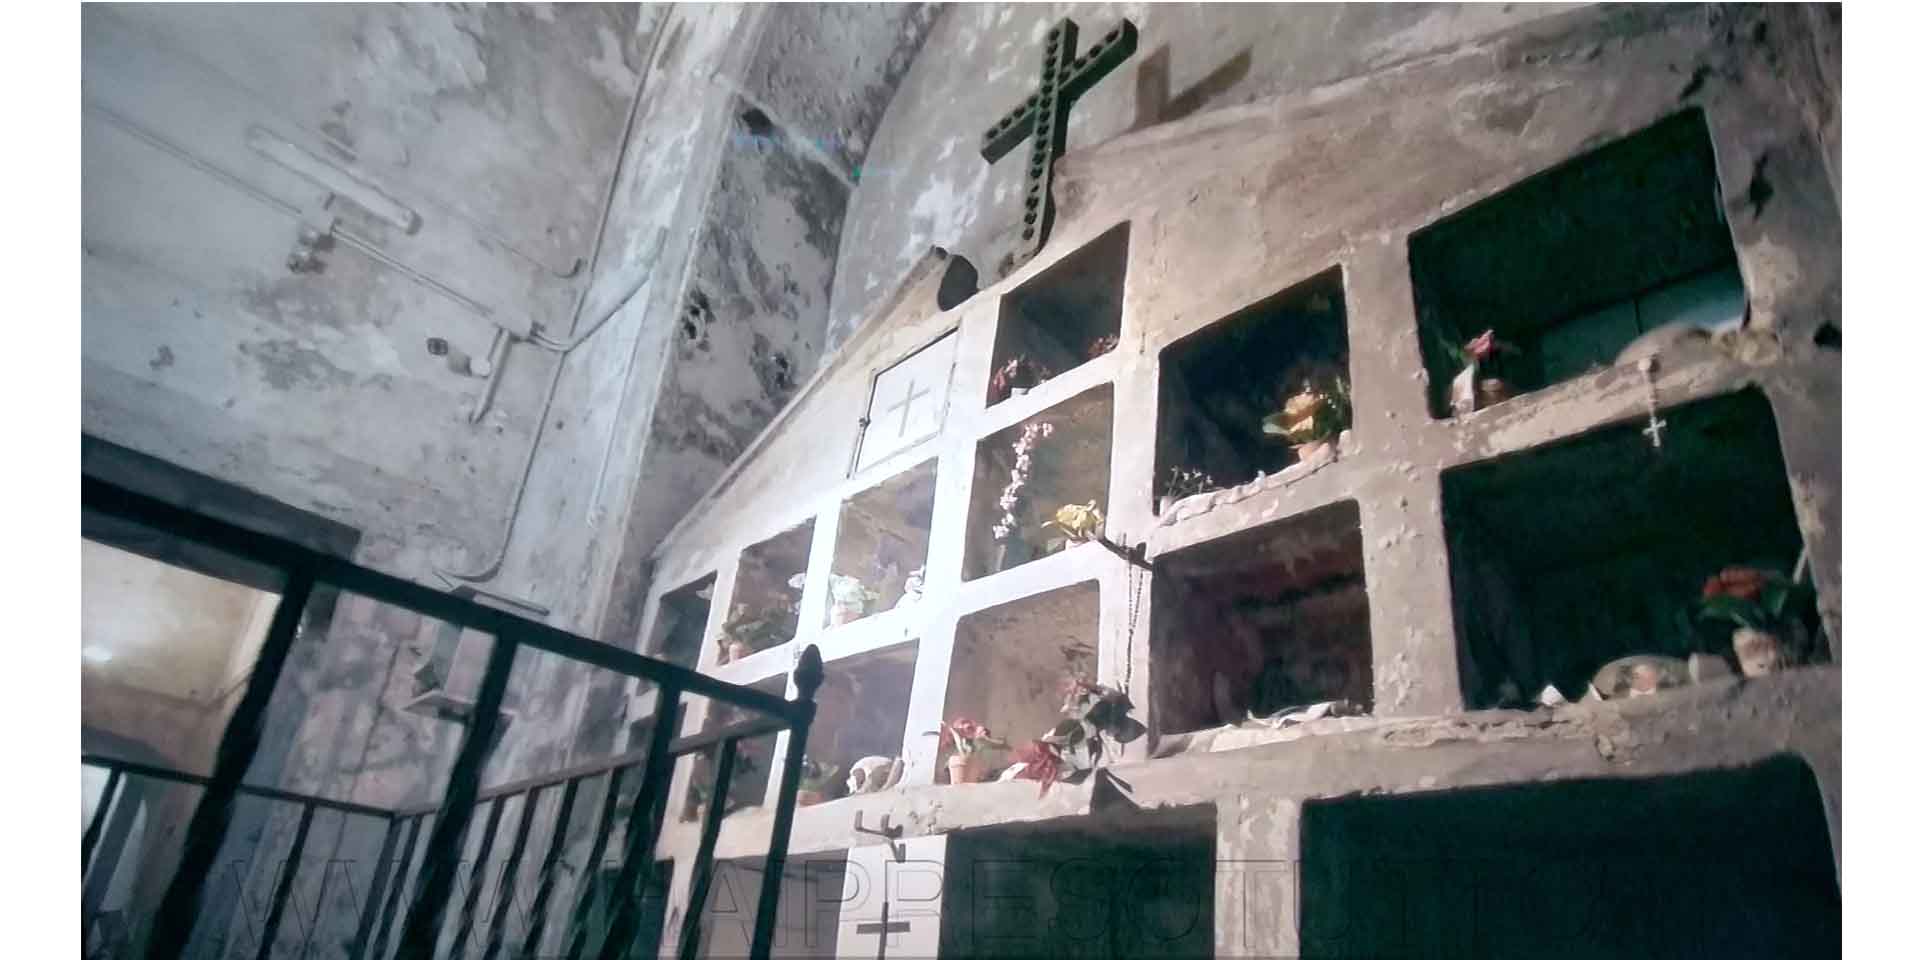 S. Maria delle Anime del purgatorio, vista delle nicchie con i teschi